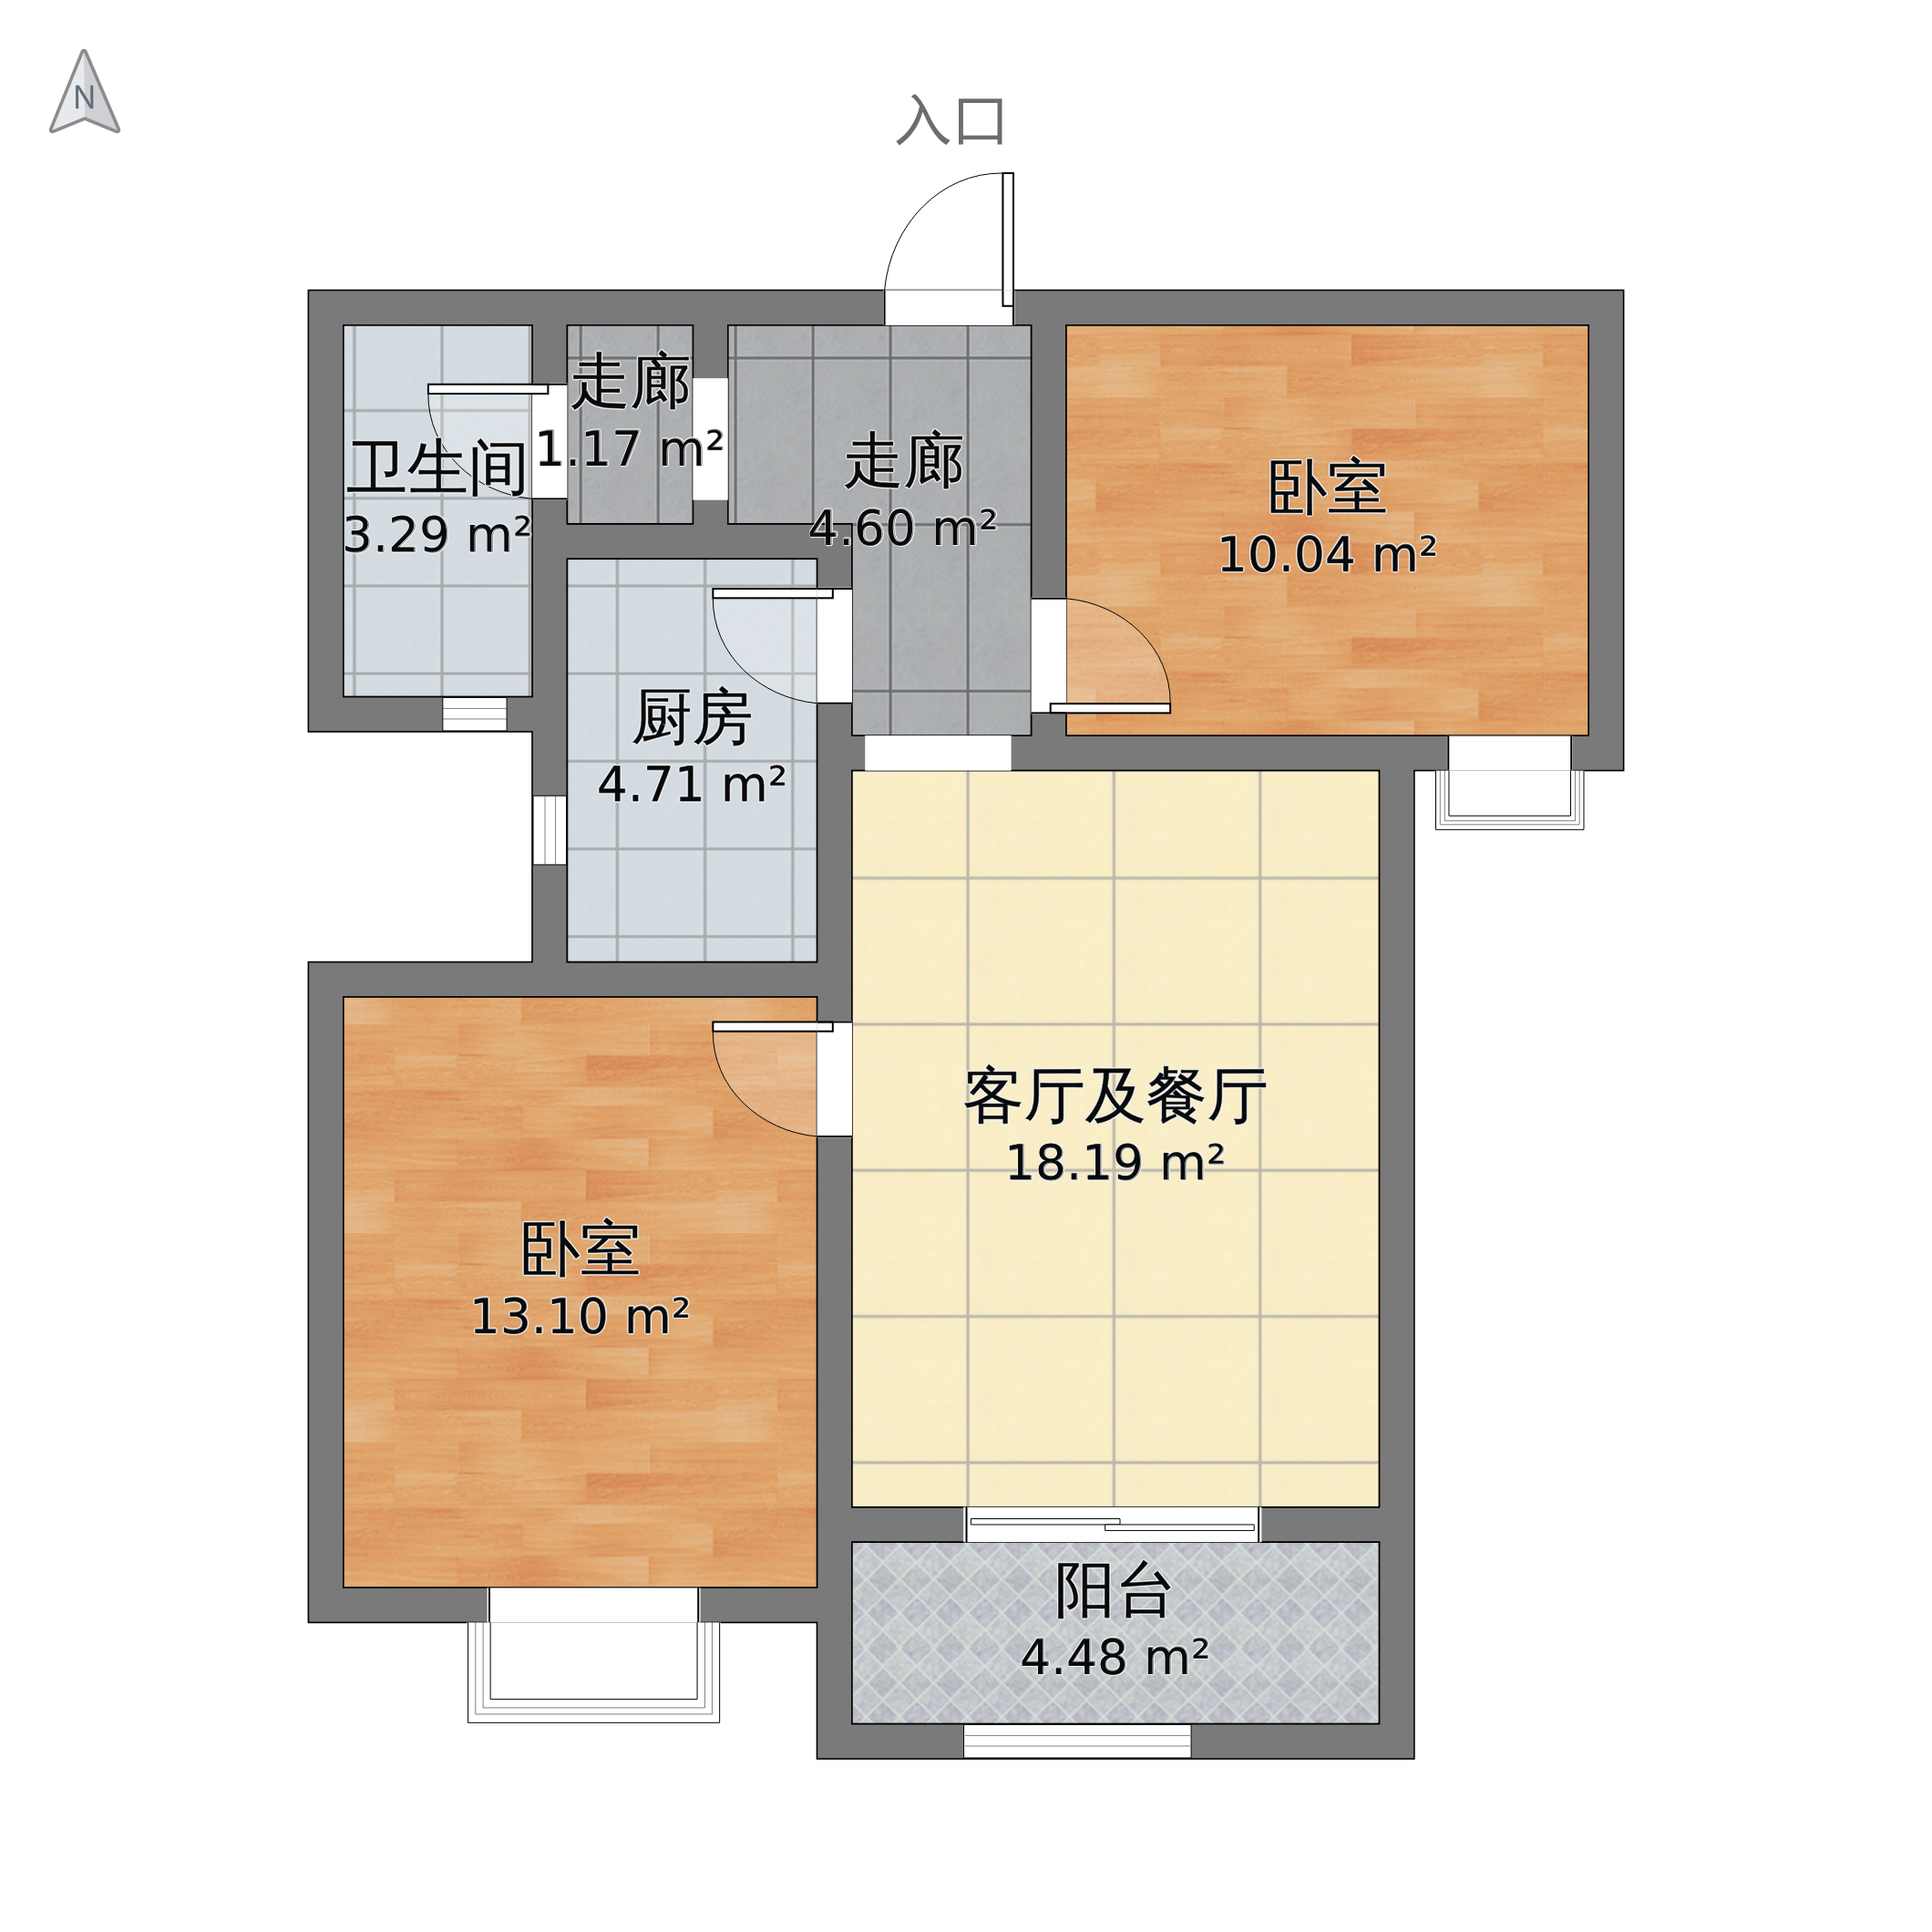 河南省郑州市管城区 橡树玫瑰城2室1厅1卫 82m05